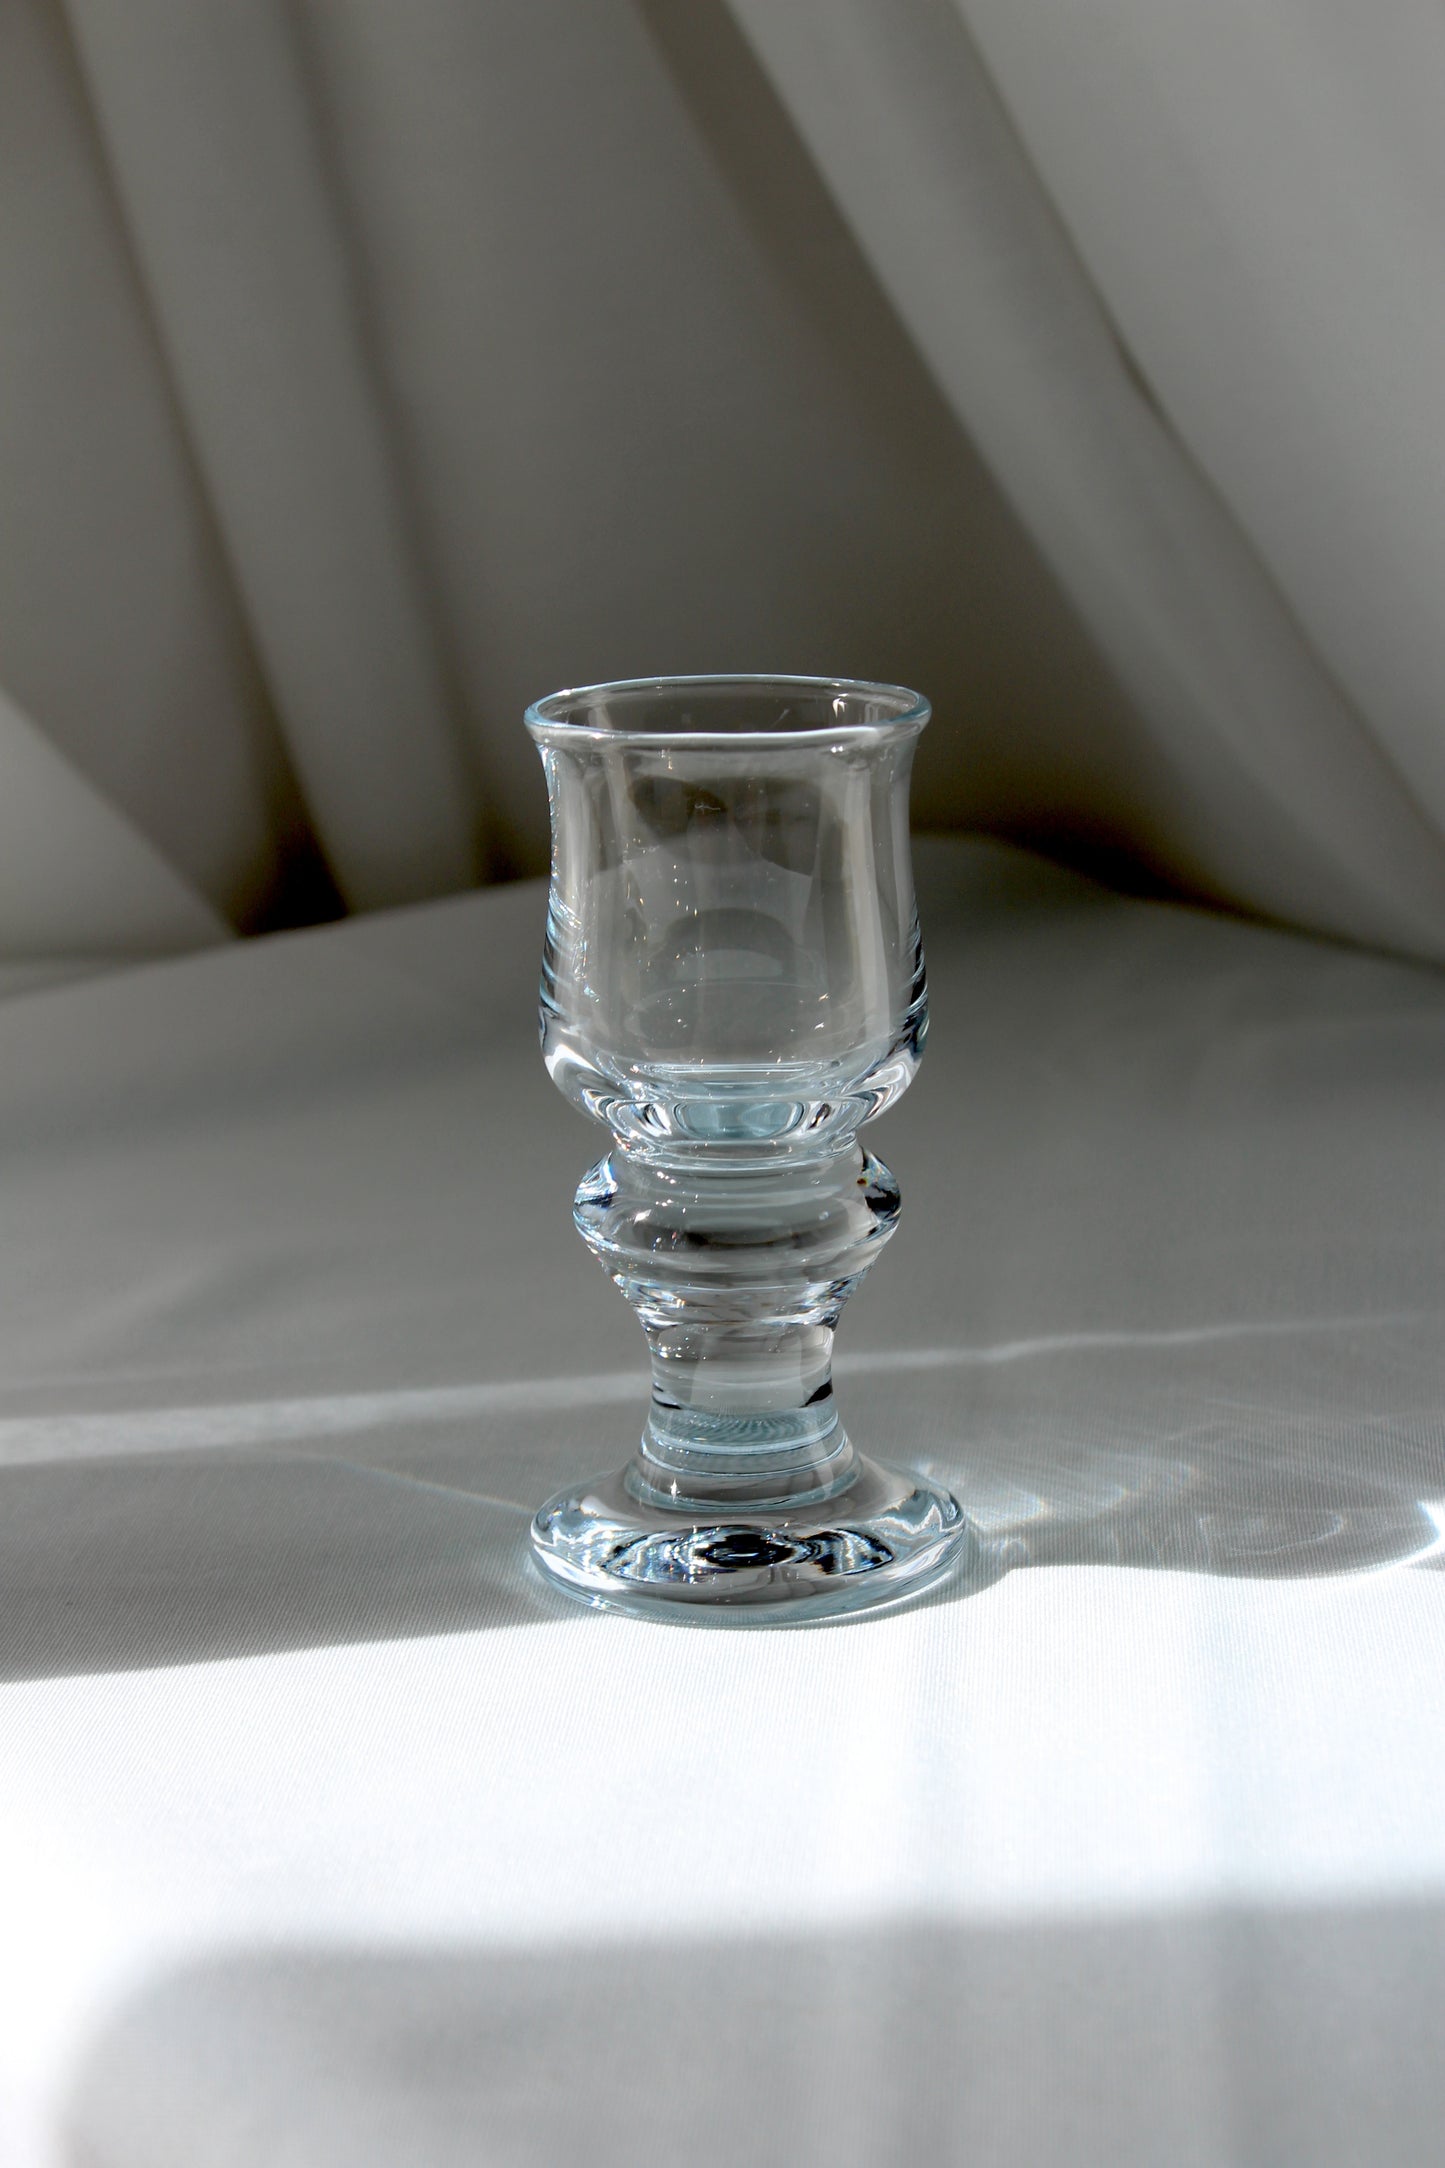 Holmegaard Tivoli - Schnapps glass